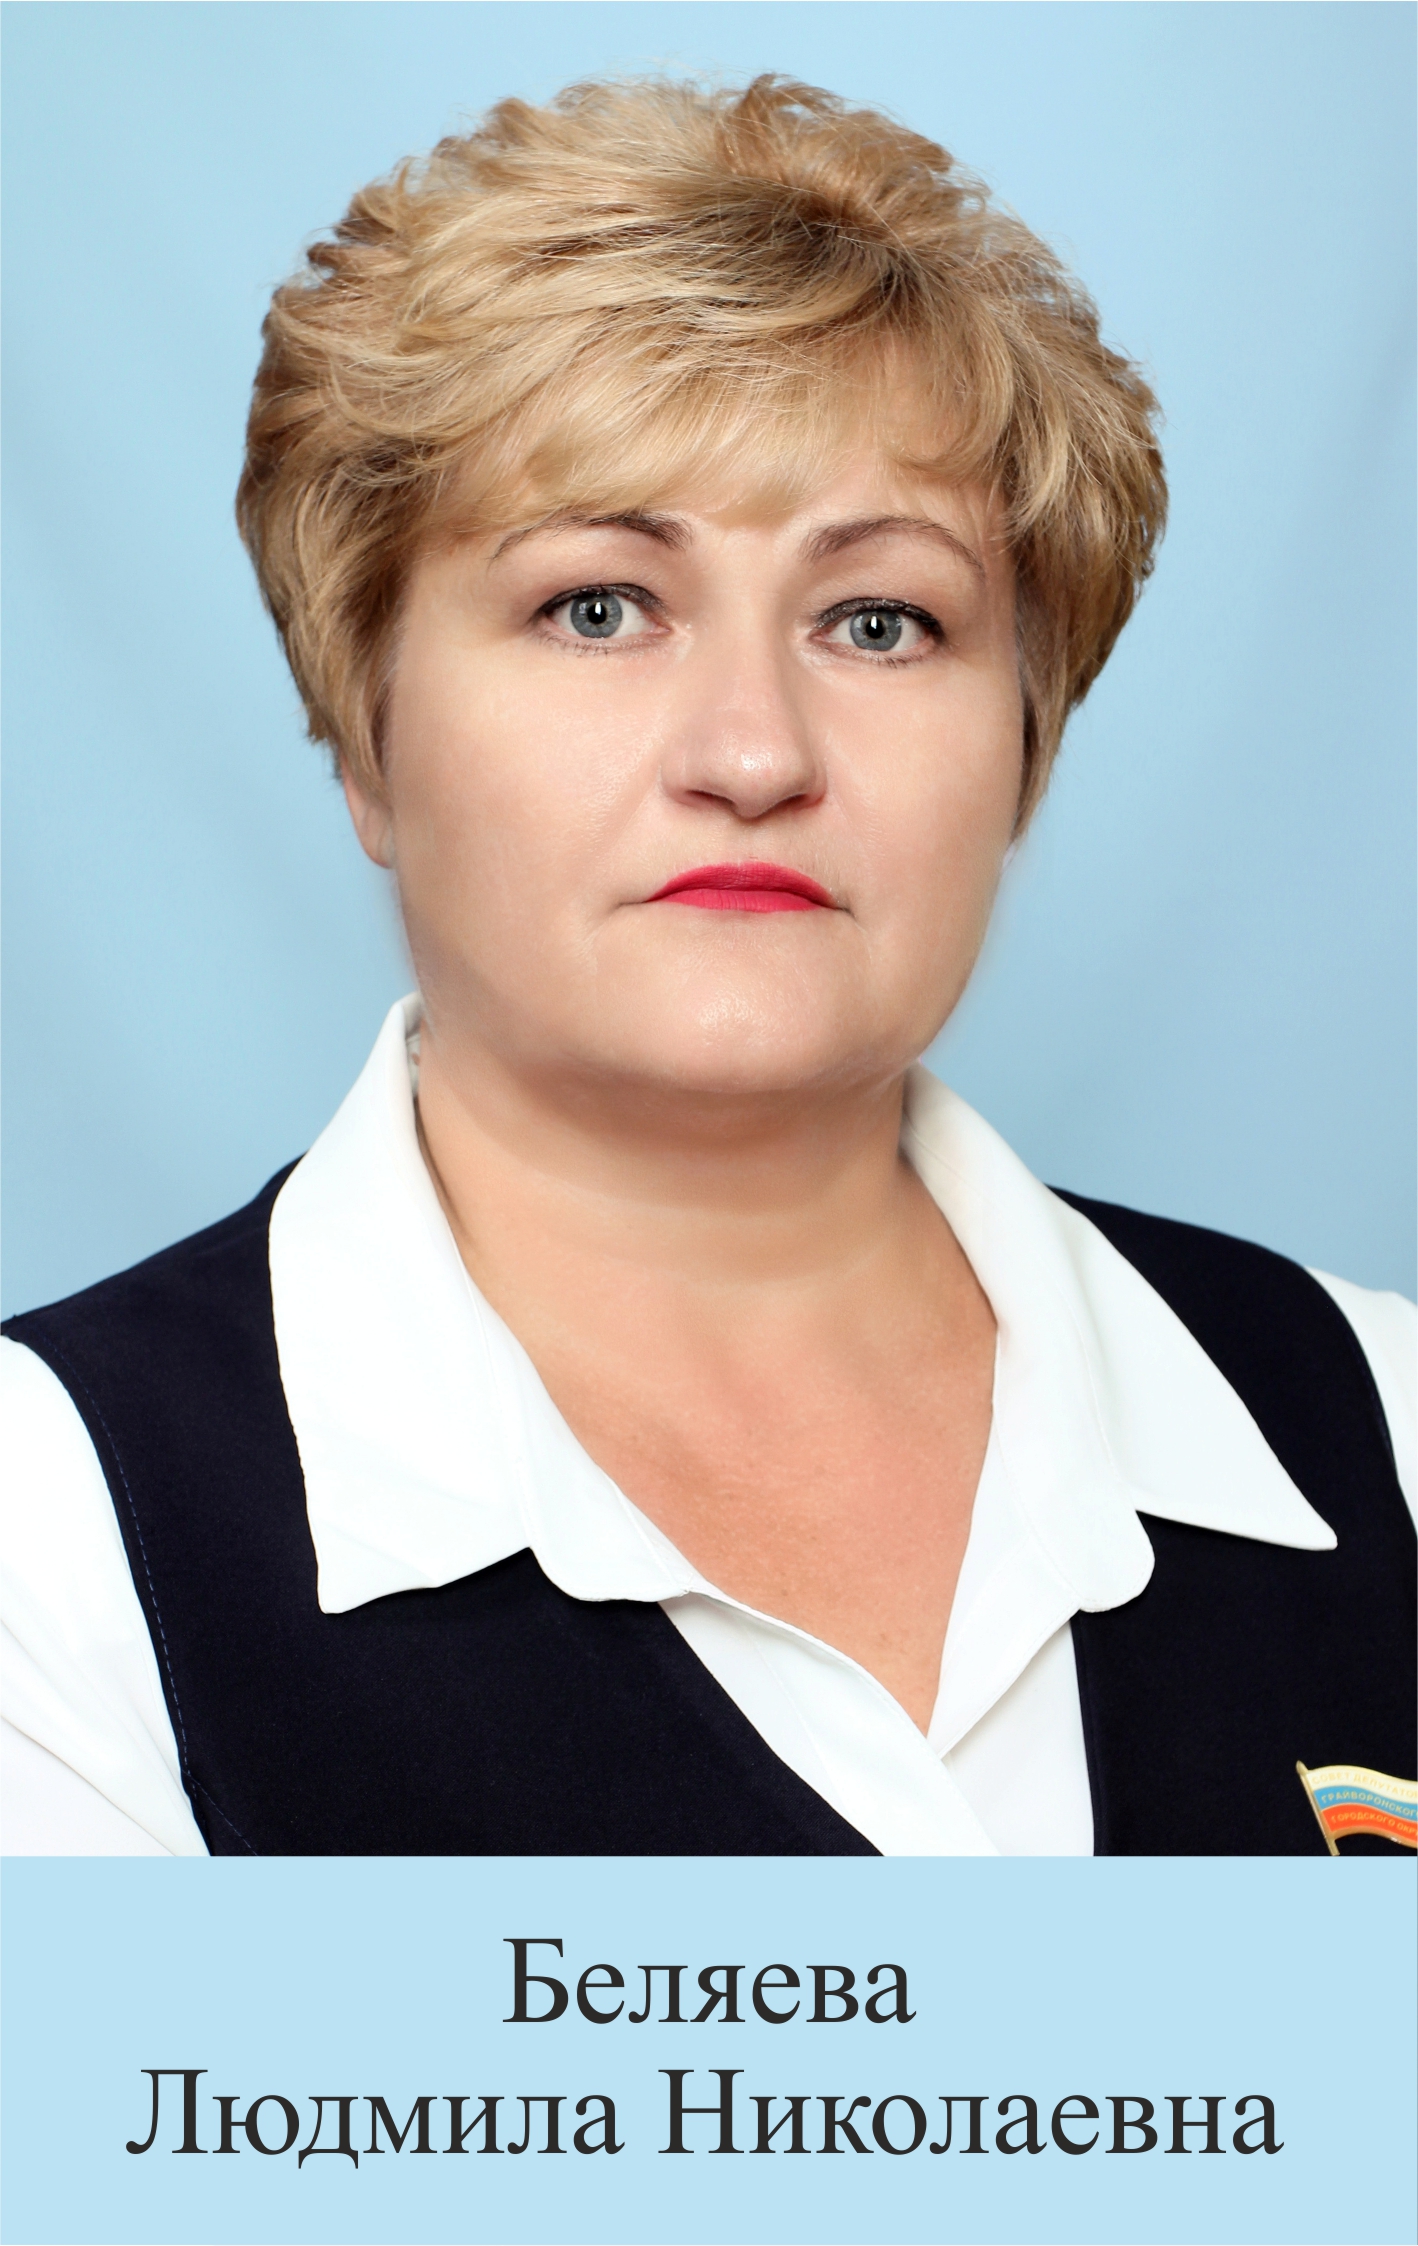 Беляева Людмила Николаевна.